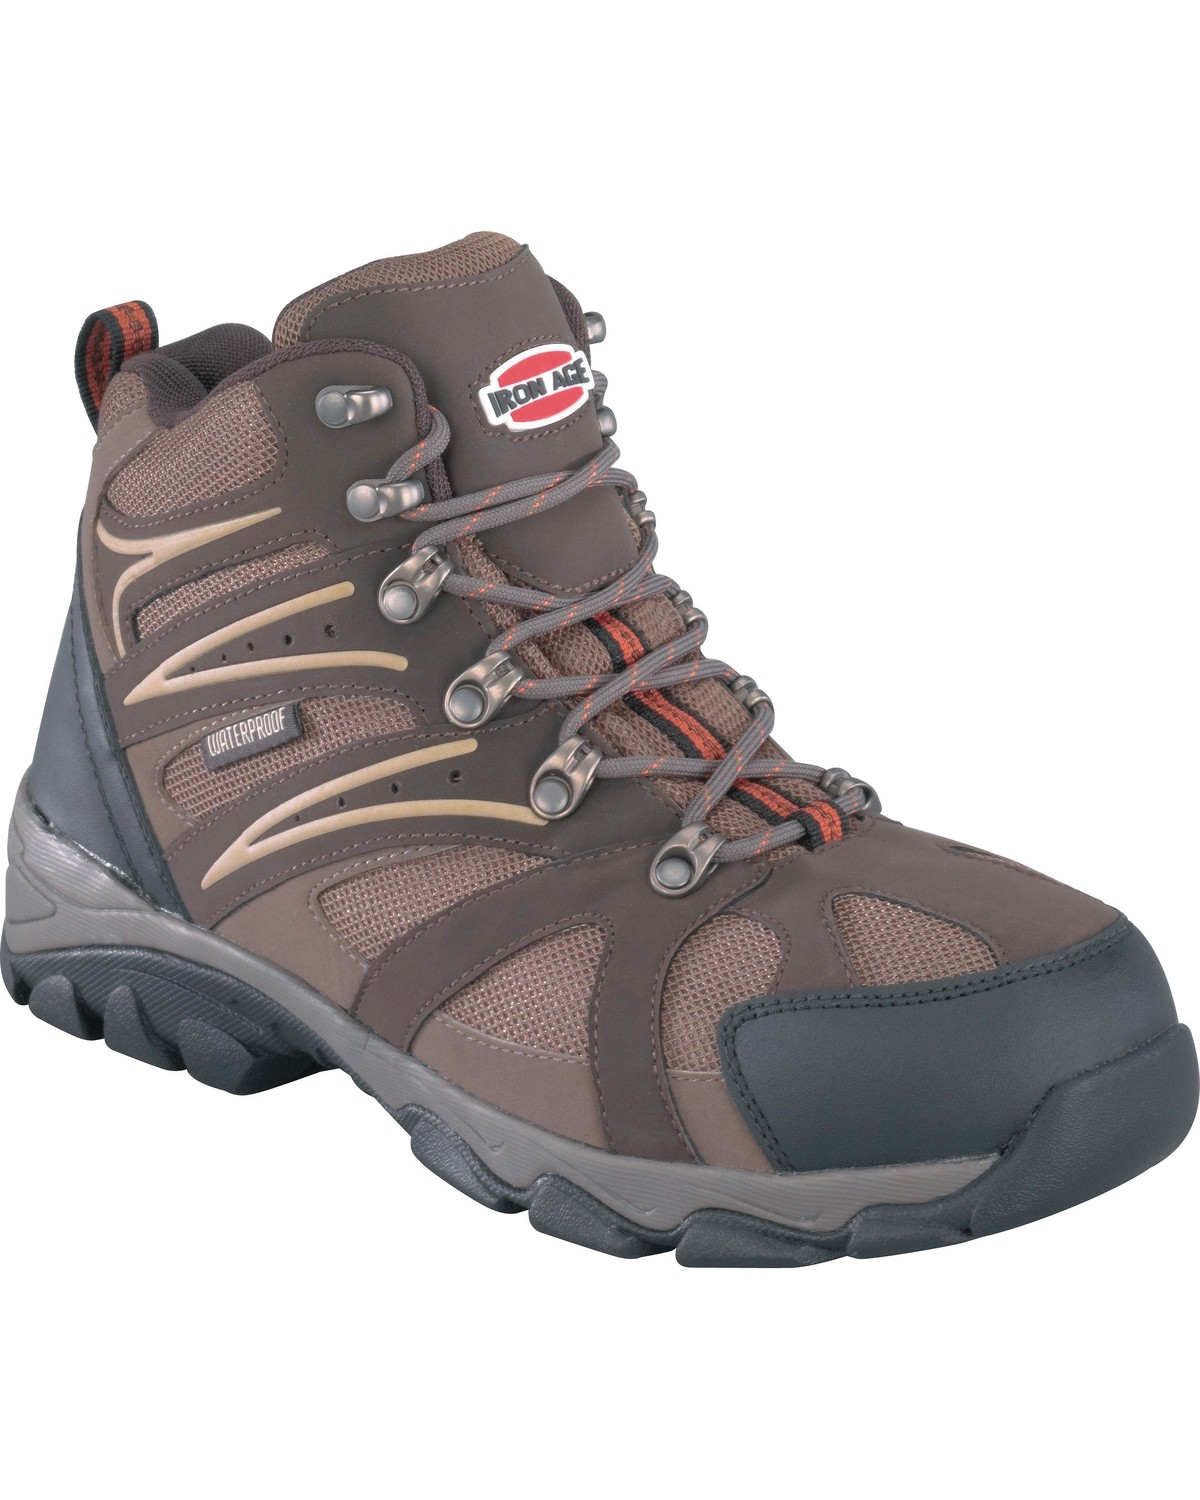 Iron Age Men's Surveyor Hiker Boots - Steel Toe